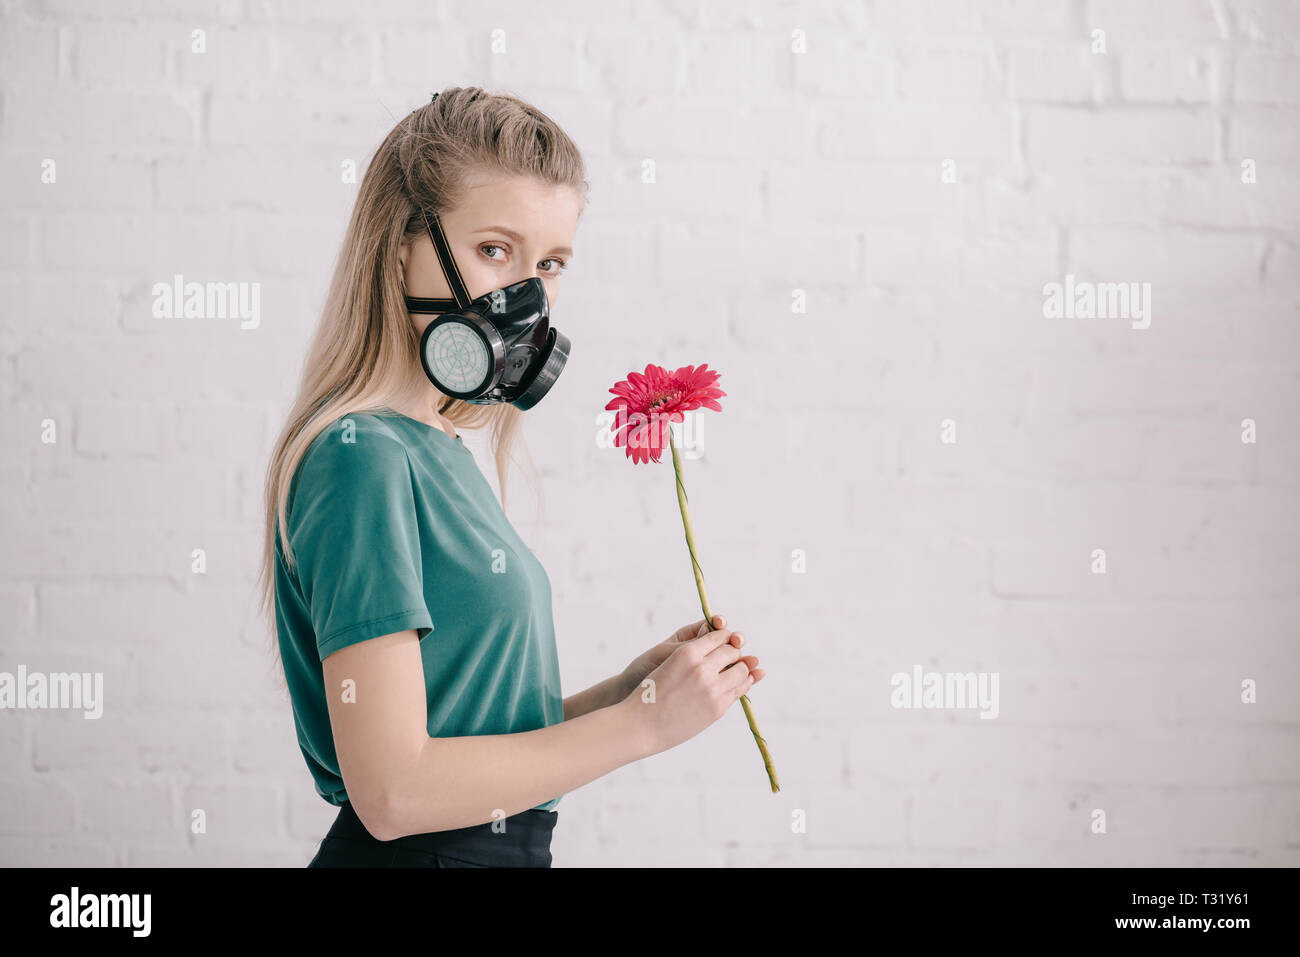 Blonde Mädchen mit pollenallergie Atemschutzmaske tragen und halten Rosa  Gerbera Blume in der Nähe der Mauer Stockfotografie - Alamy